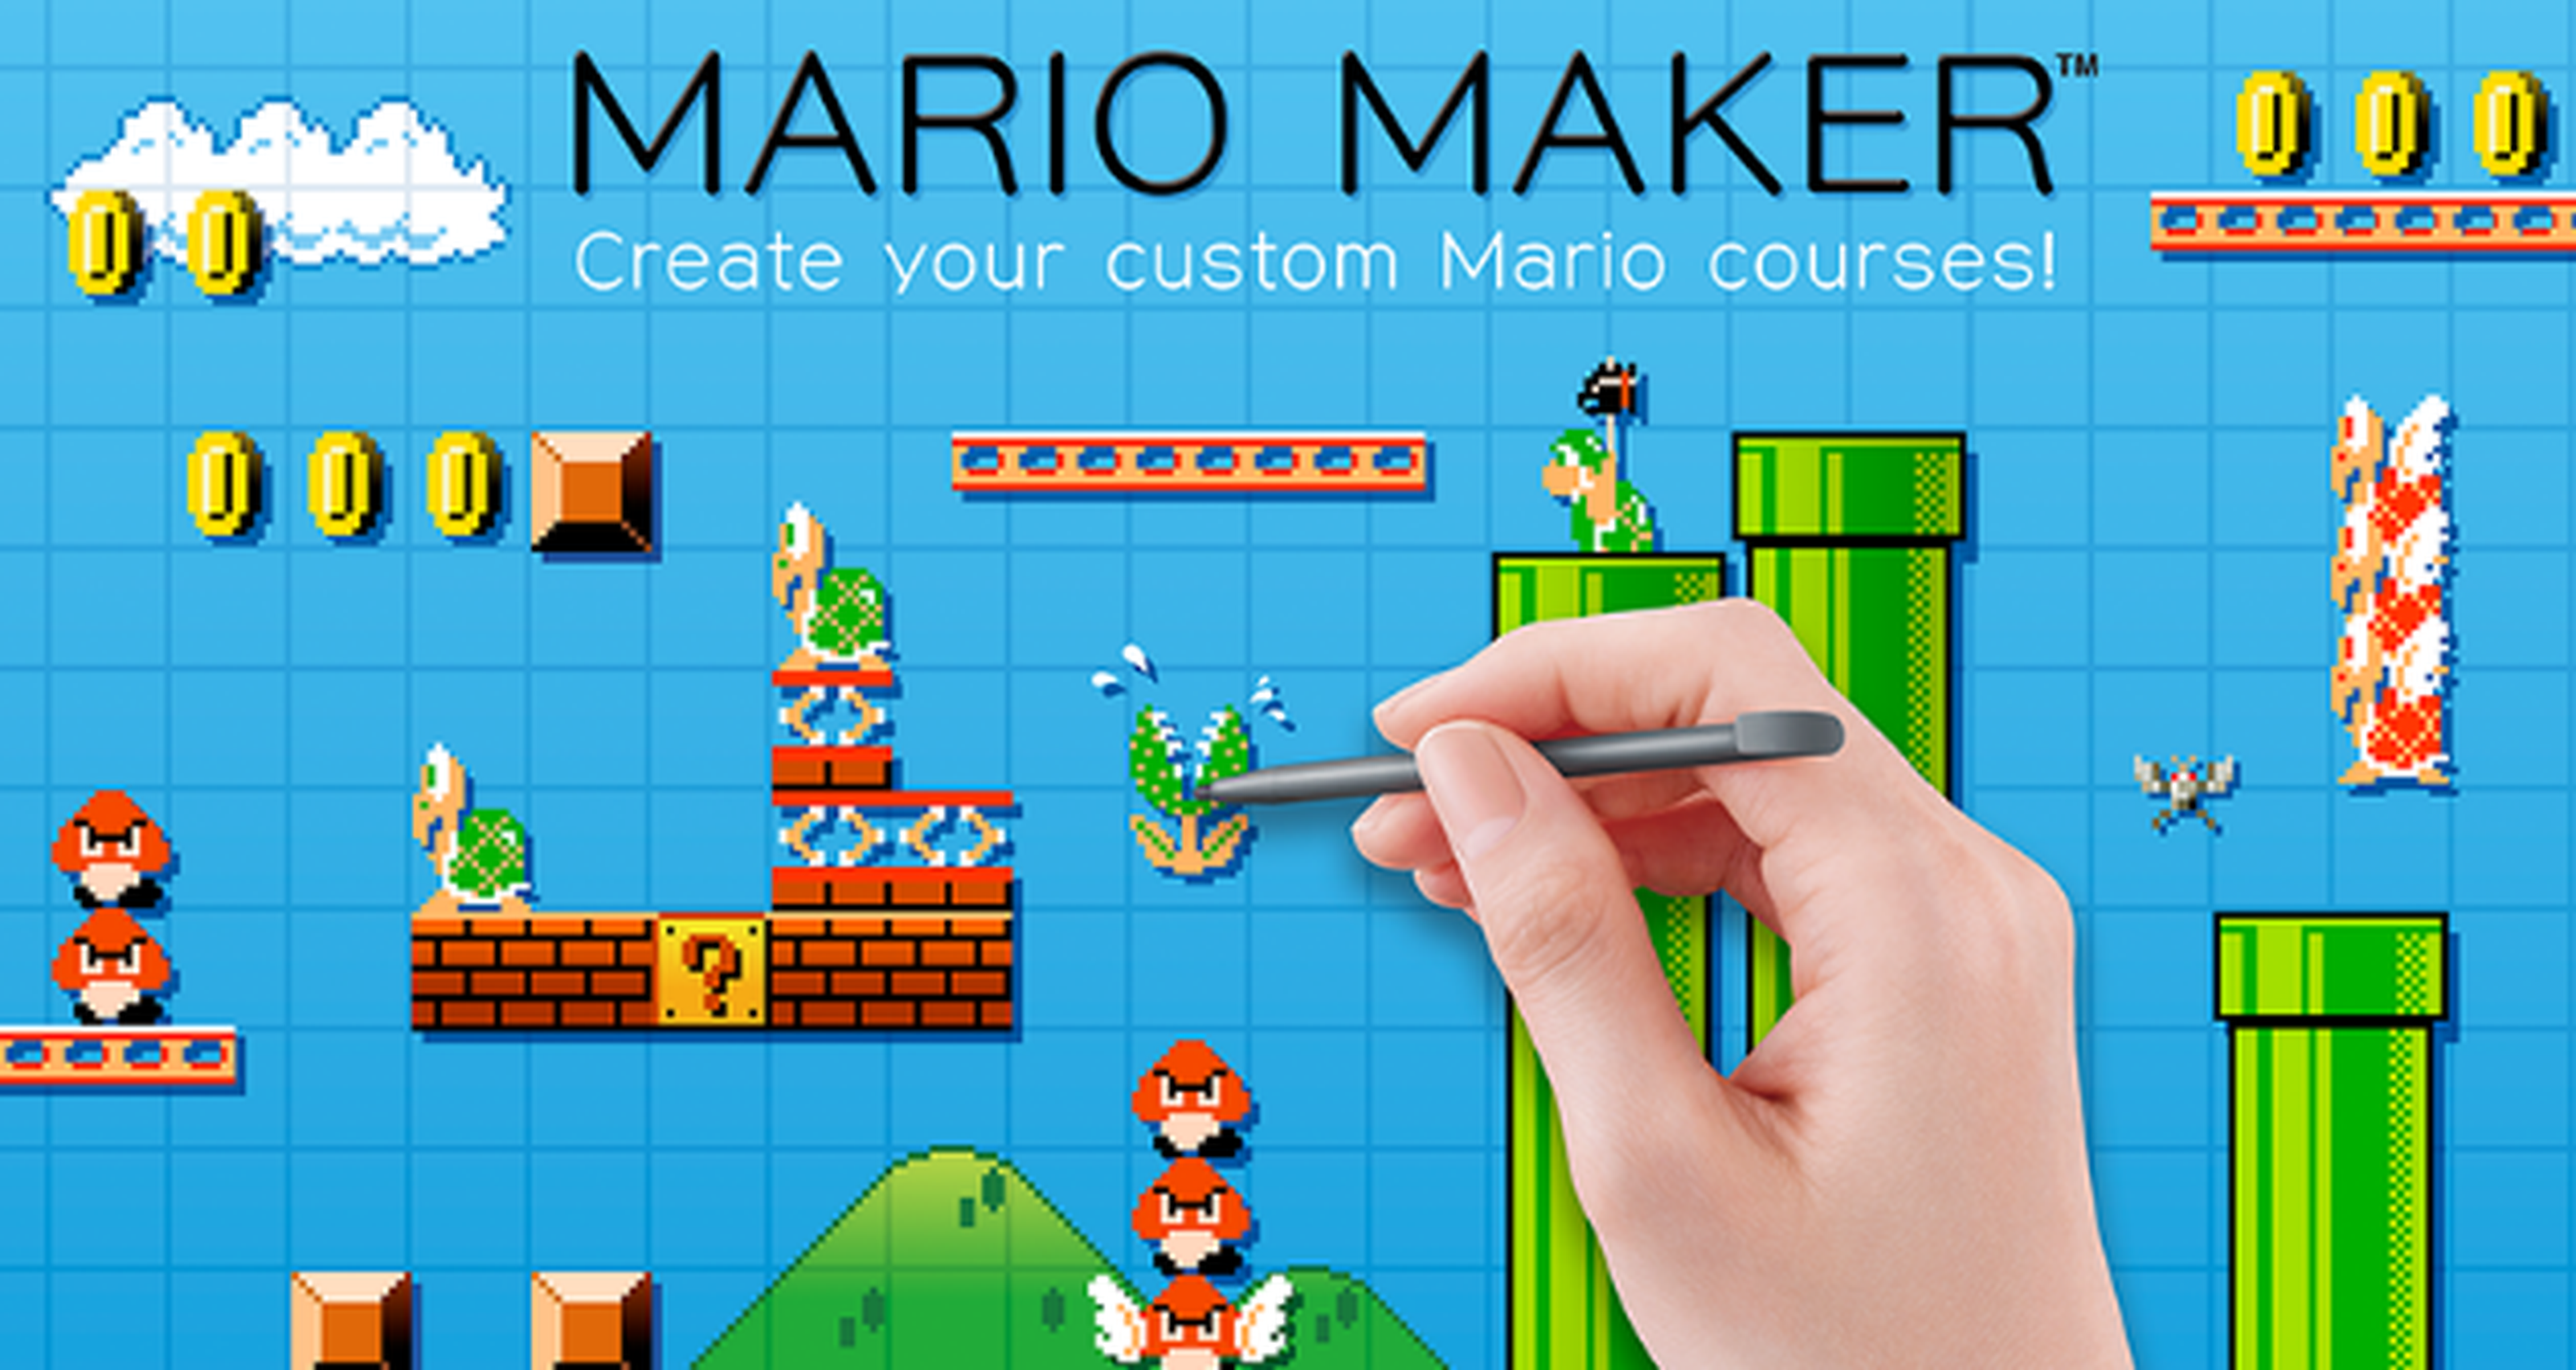 Mario Maker comenzó como una herramienta para los desarrolladores